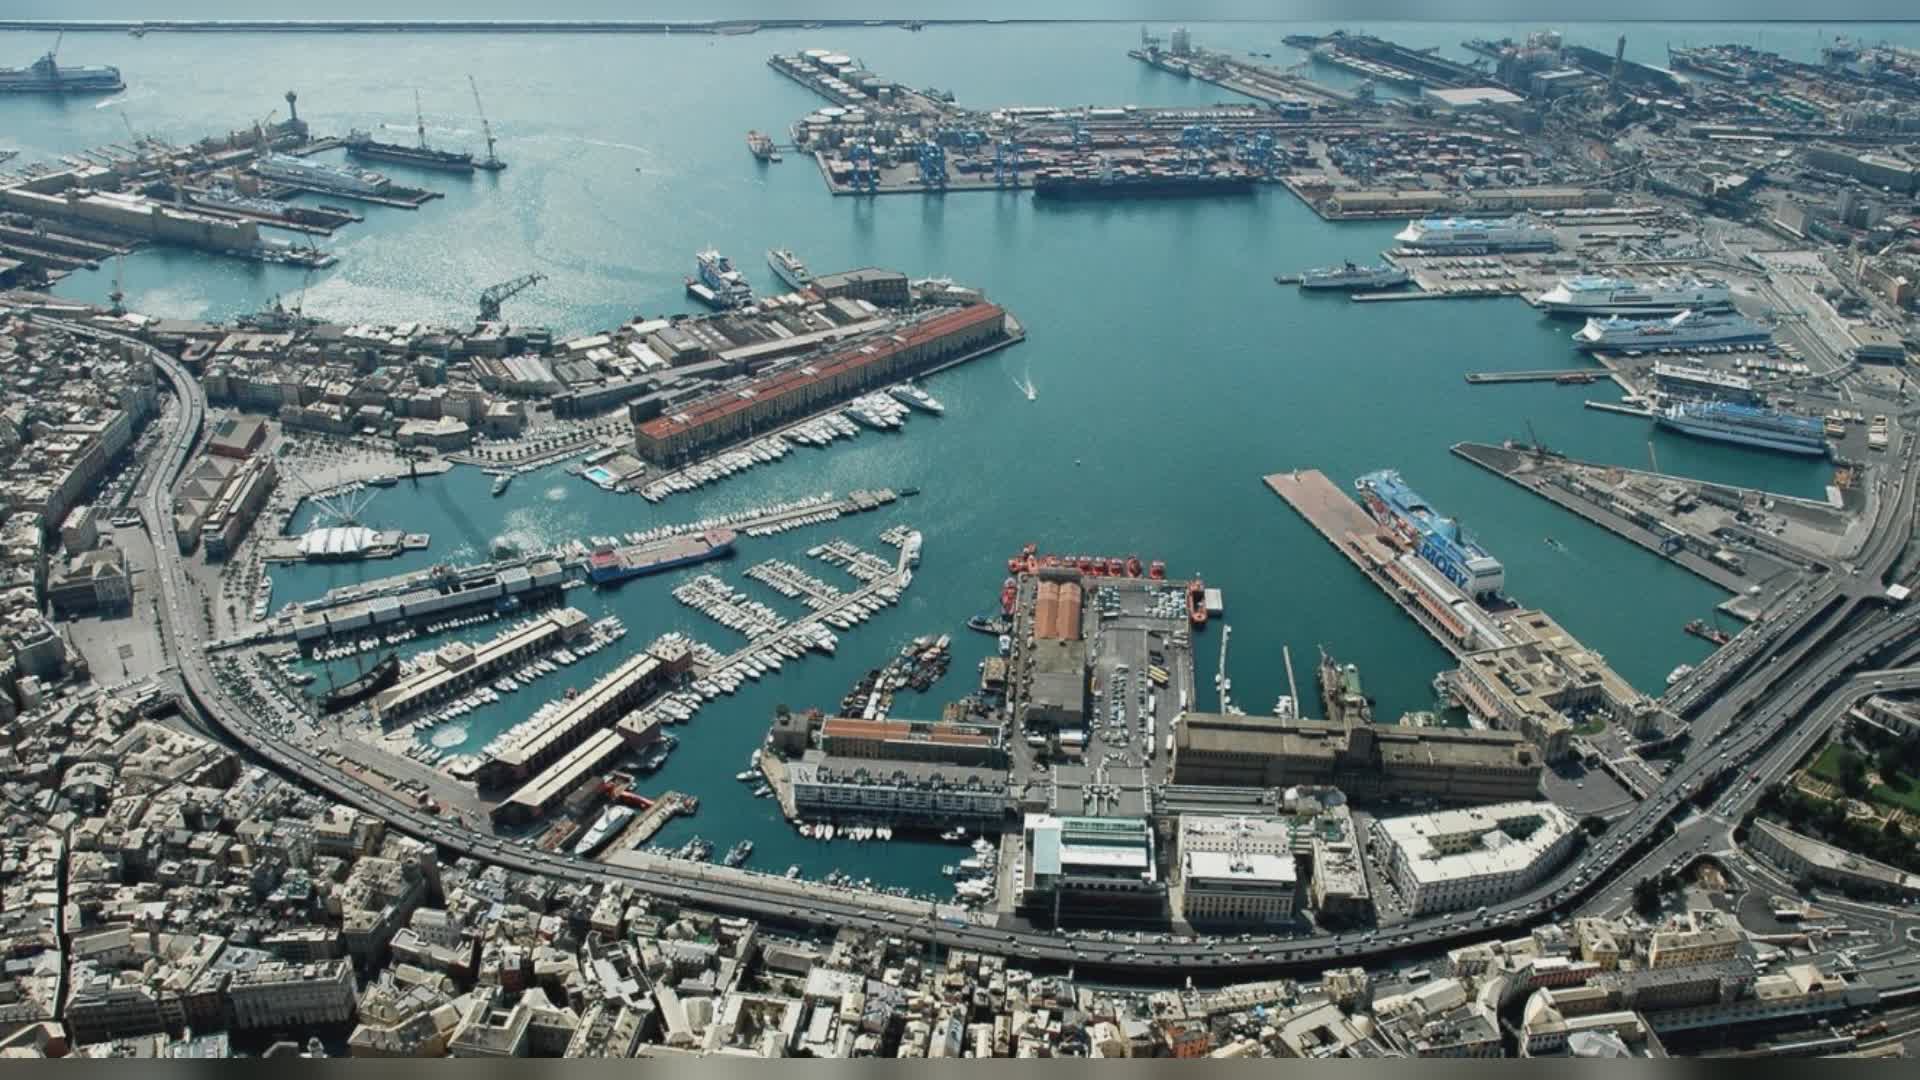 Porto di Genova, Toti: "Nessun momento di sbandamento, tutto va avanti con celerità e coordinamento"